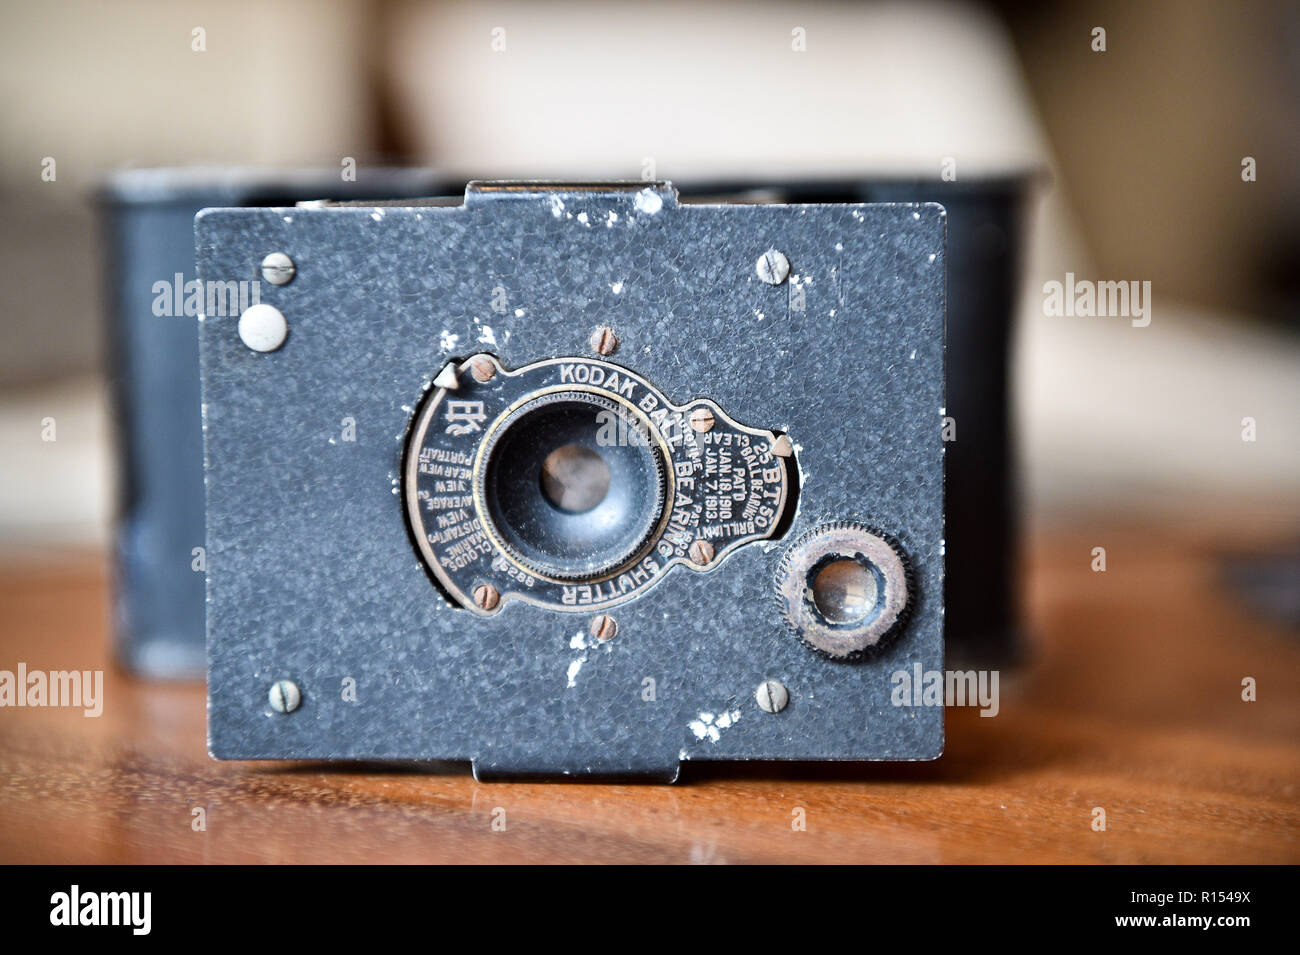 L'appareil photo Kodak Vest Pocket compact, également connu sous le nom de Kodak ou VPK « soldiers', appartenant au capitaine Robert Harley Egerton Bennett, qu'il a utilisé pour prendre des photos pendant son temps à Ypres, en Belgique, au cours de la Première Guerre mondiale. Banque D'Images